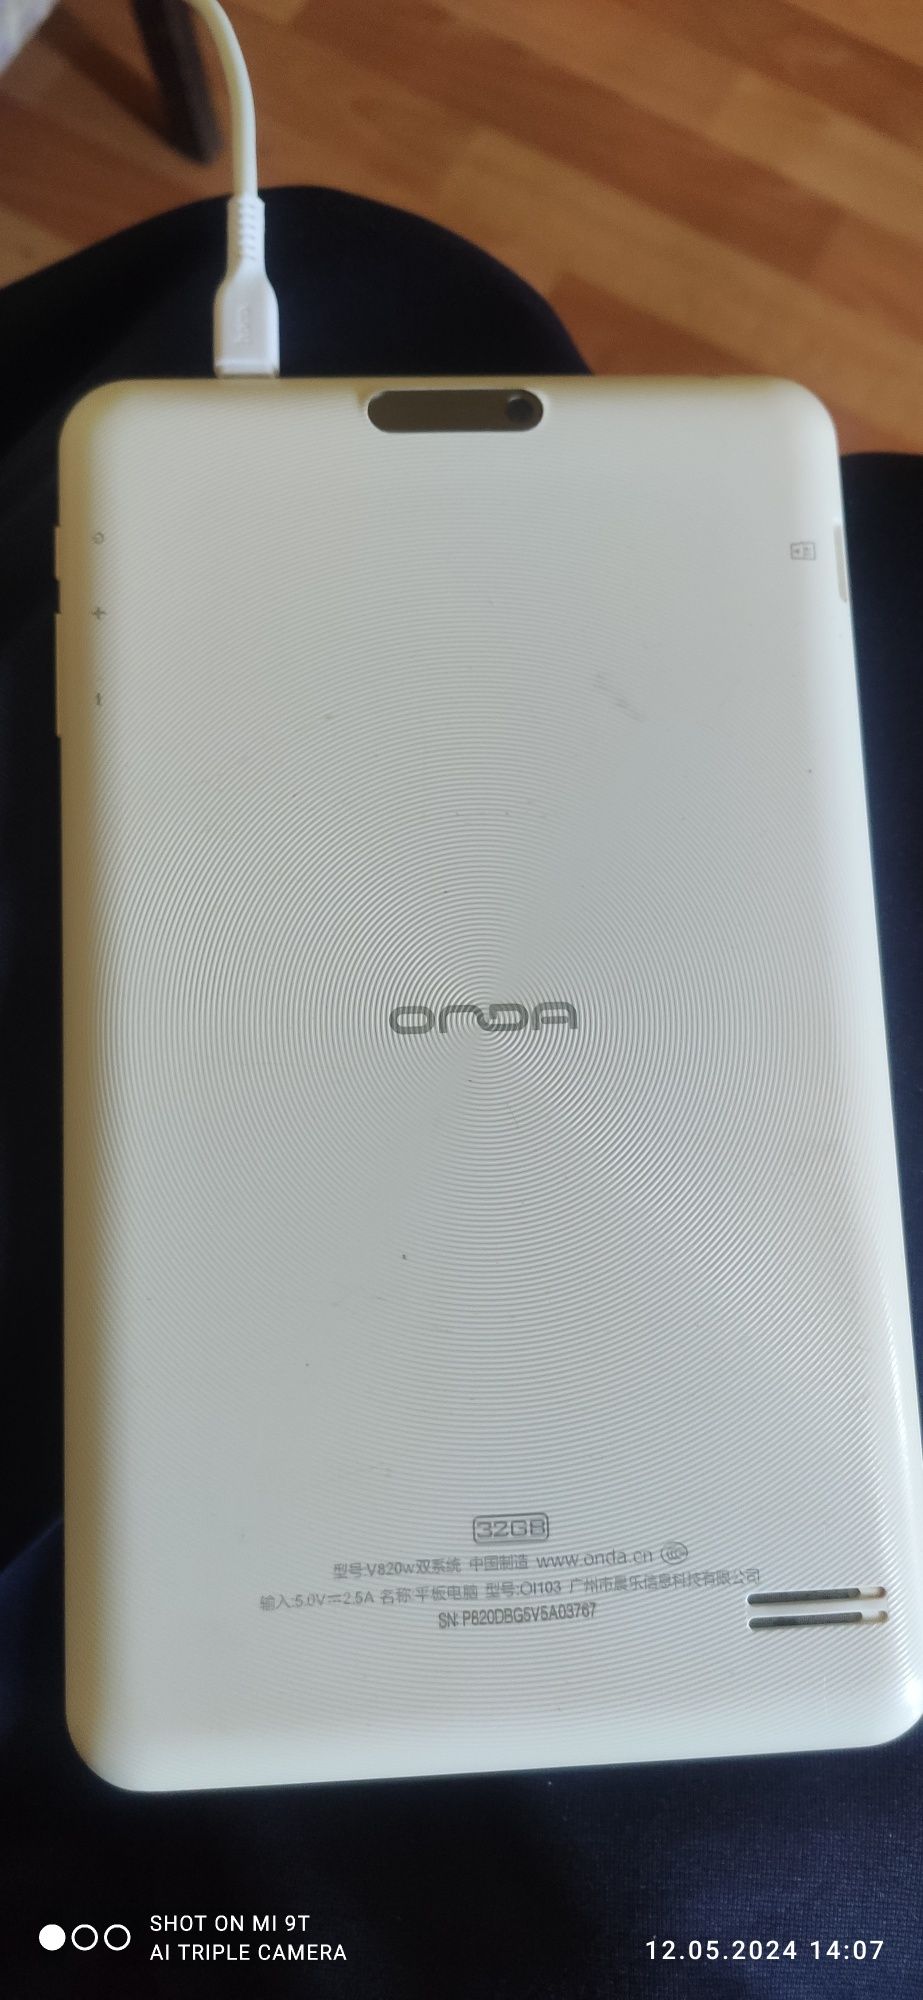 Продам планшет Onda v820w чистый Windows